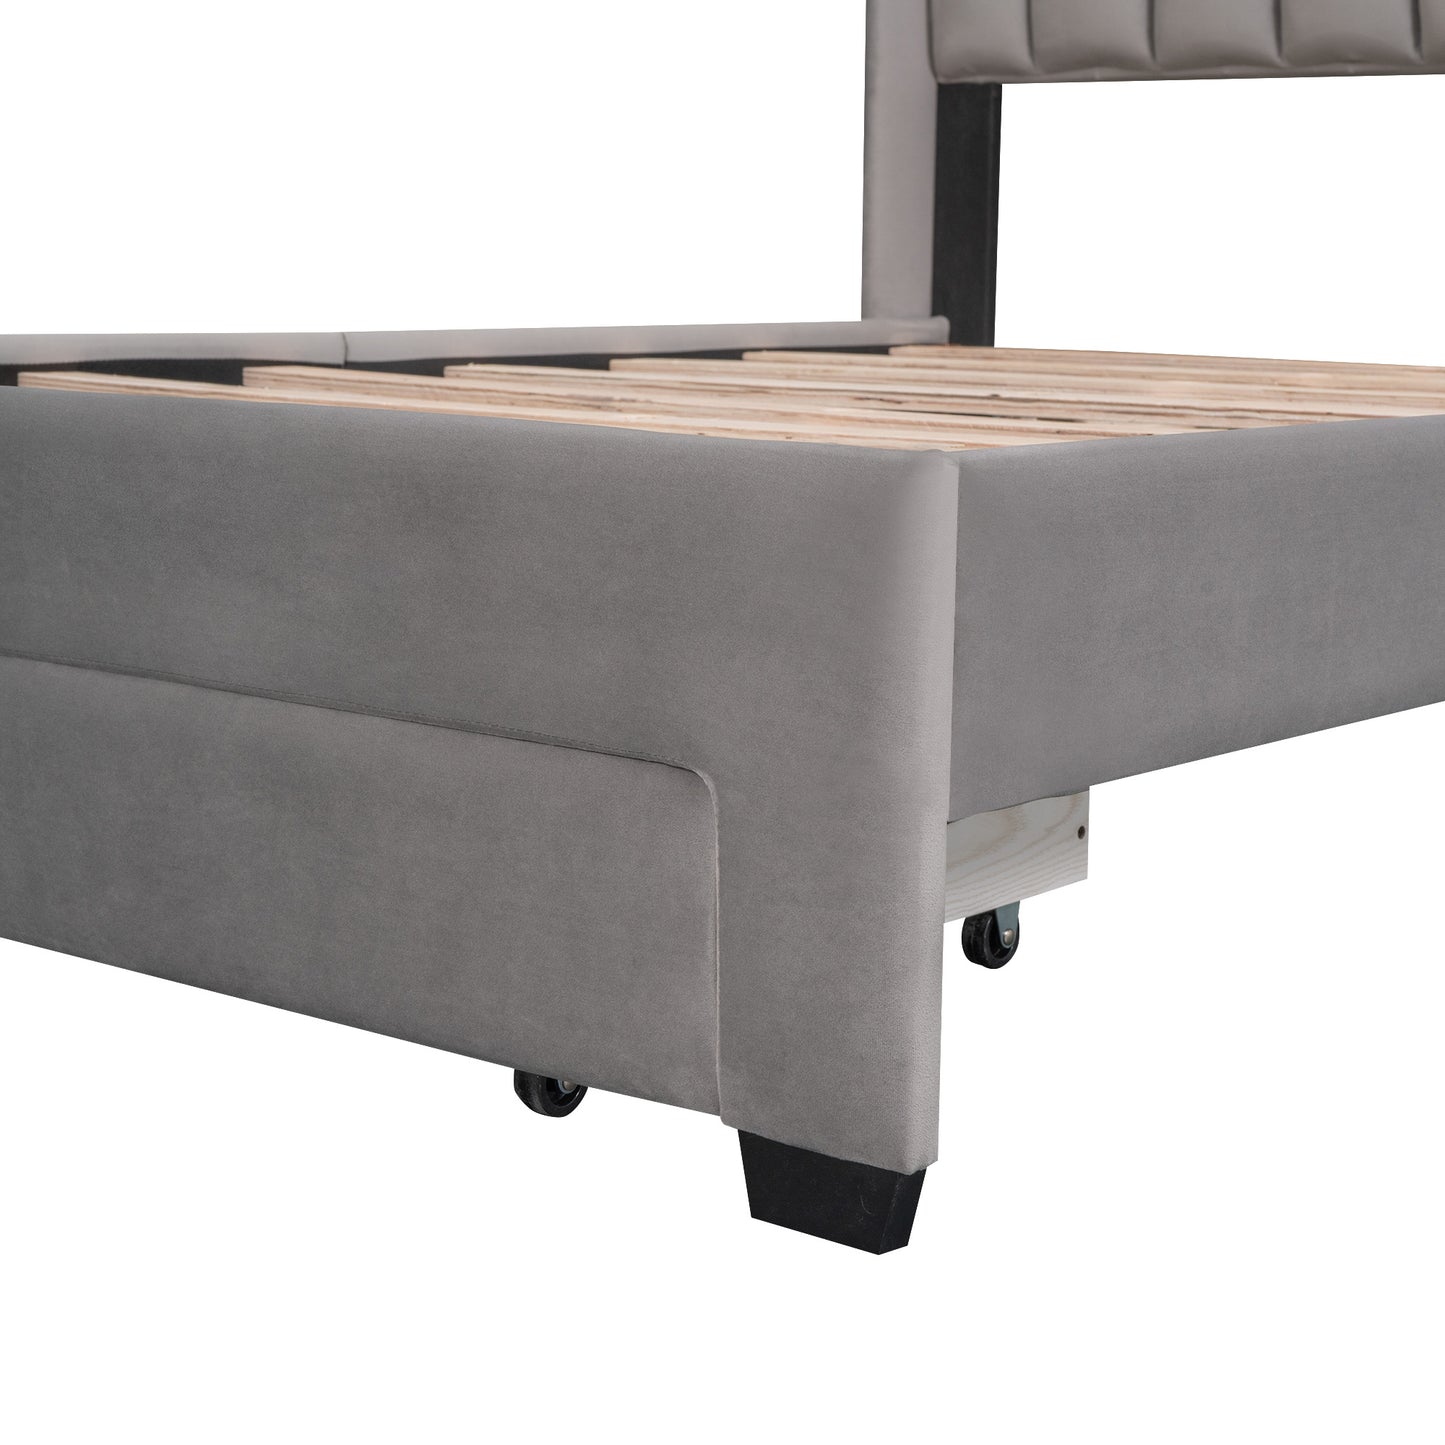 danny velvet upholstered platform bed with a big drawer - gray